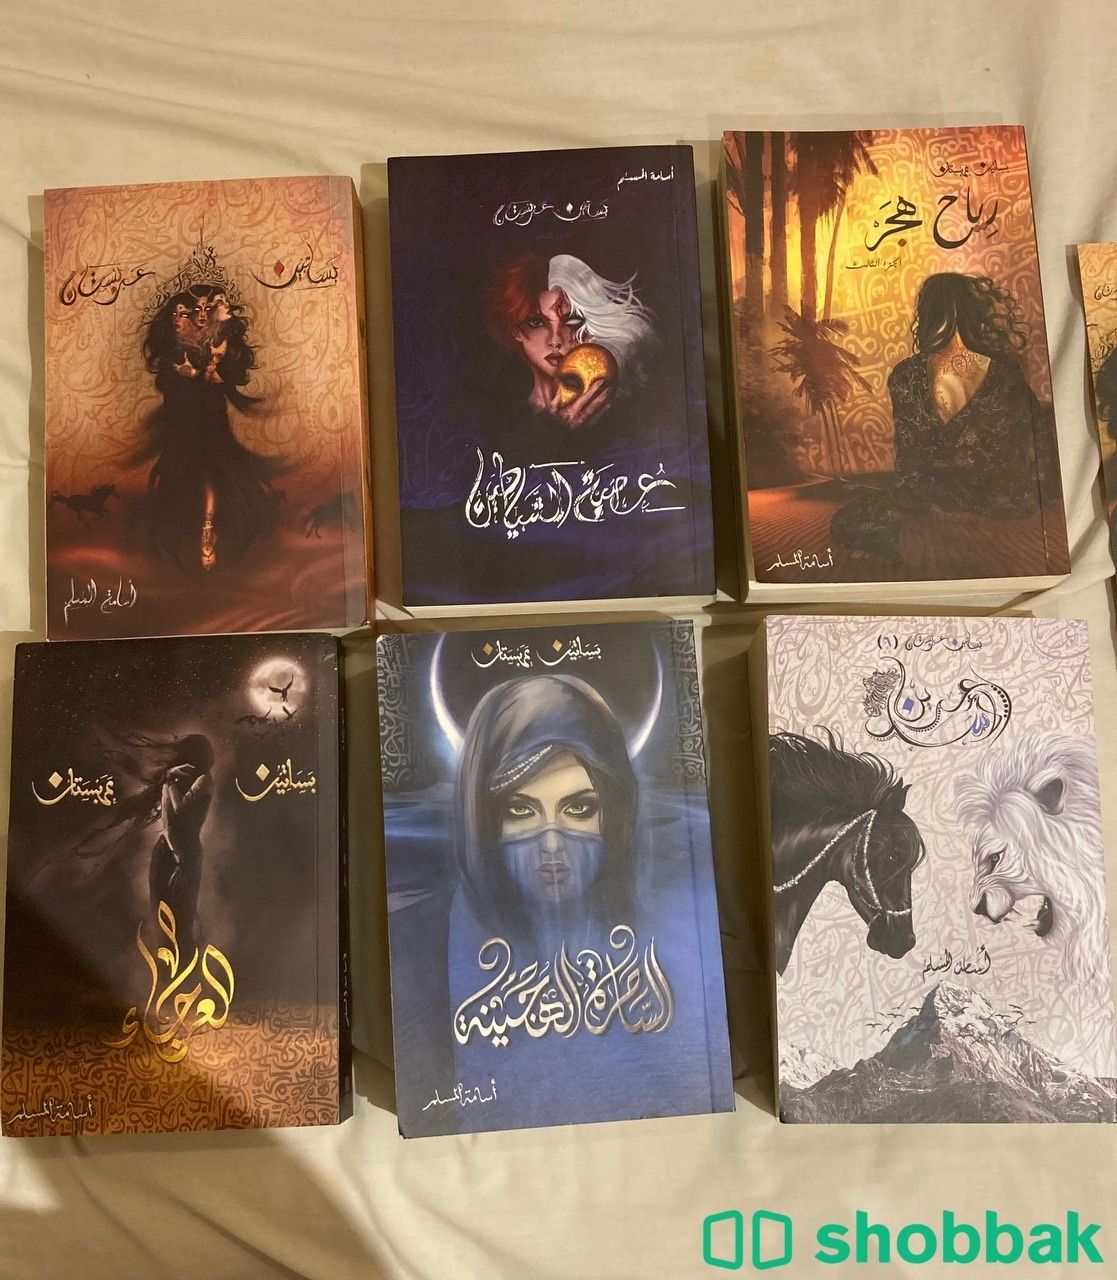 سلسلة( بساتين عربستان)كاملة ٦ كتب، للكاتب اسامة المسبم Shobbak Saudi Arabia